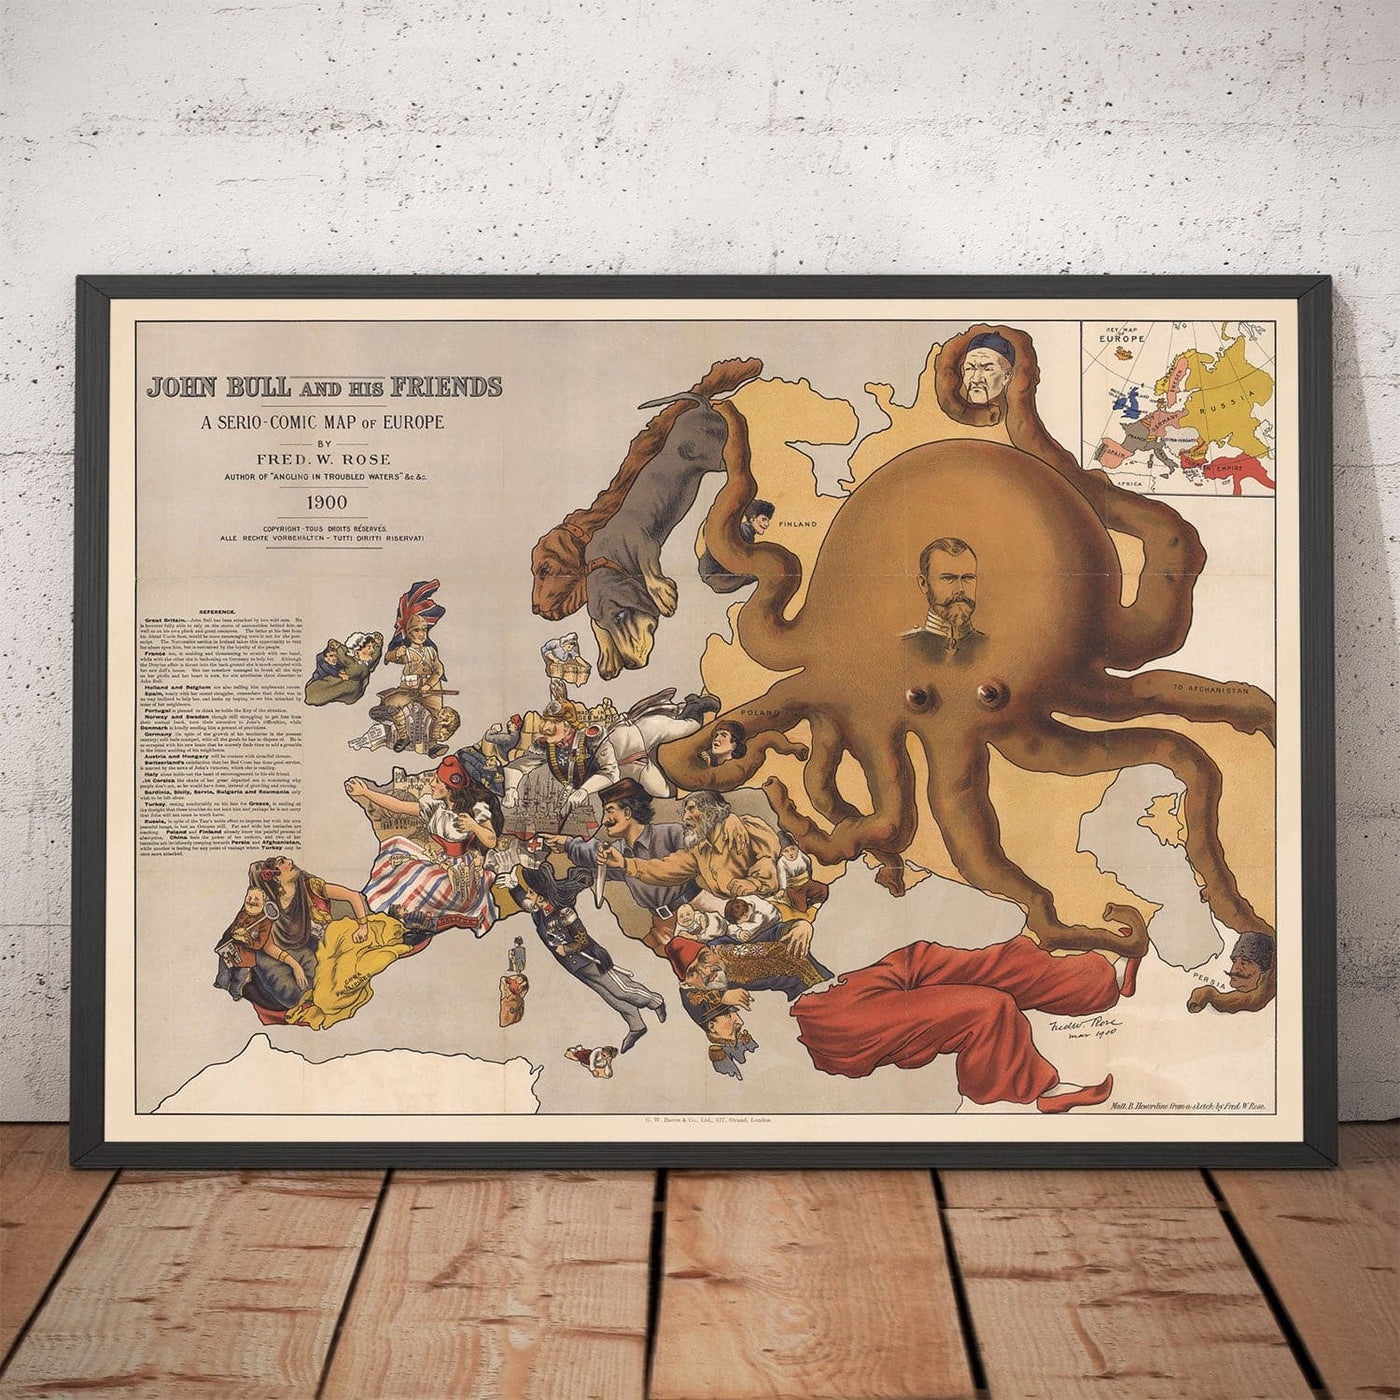 Alte satirische Karte von Europa, 1900 von Fredrick Rose - John Bull Propaganda Serio-Comic, Octopus Nikolai II Russisches Reich